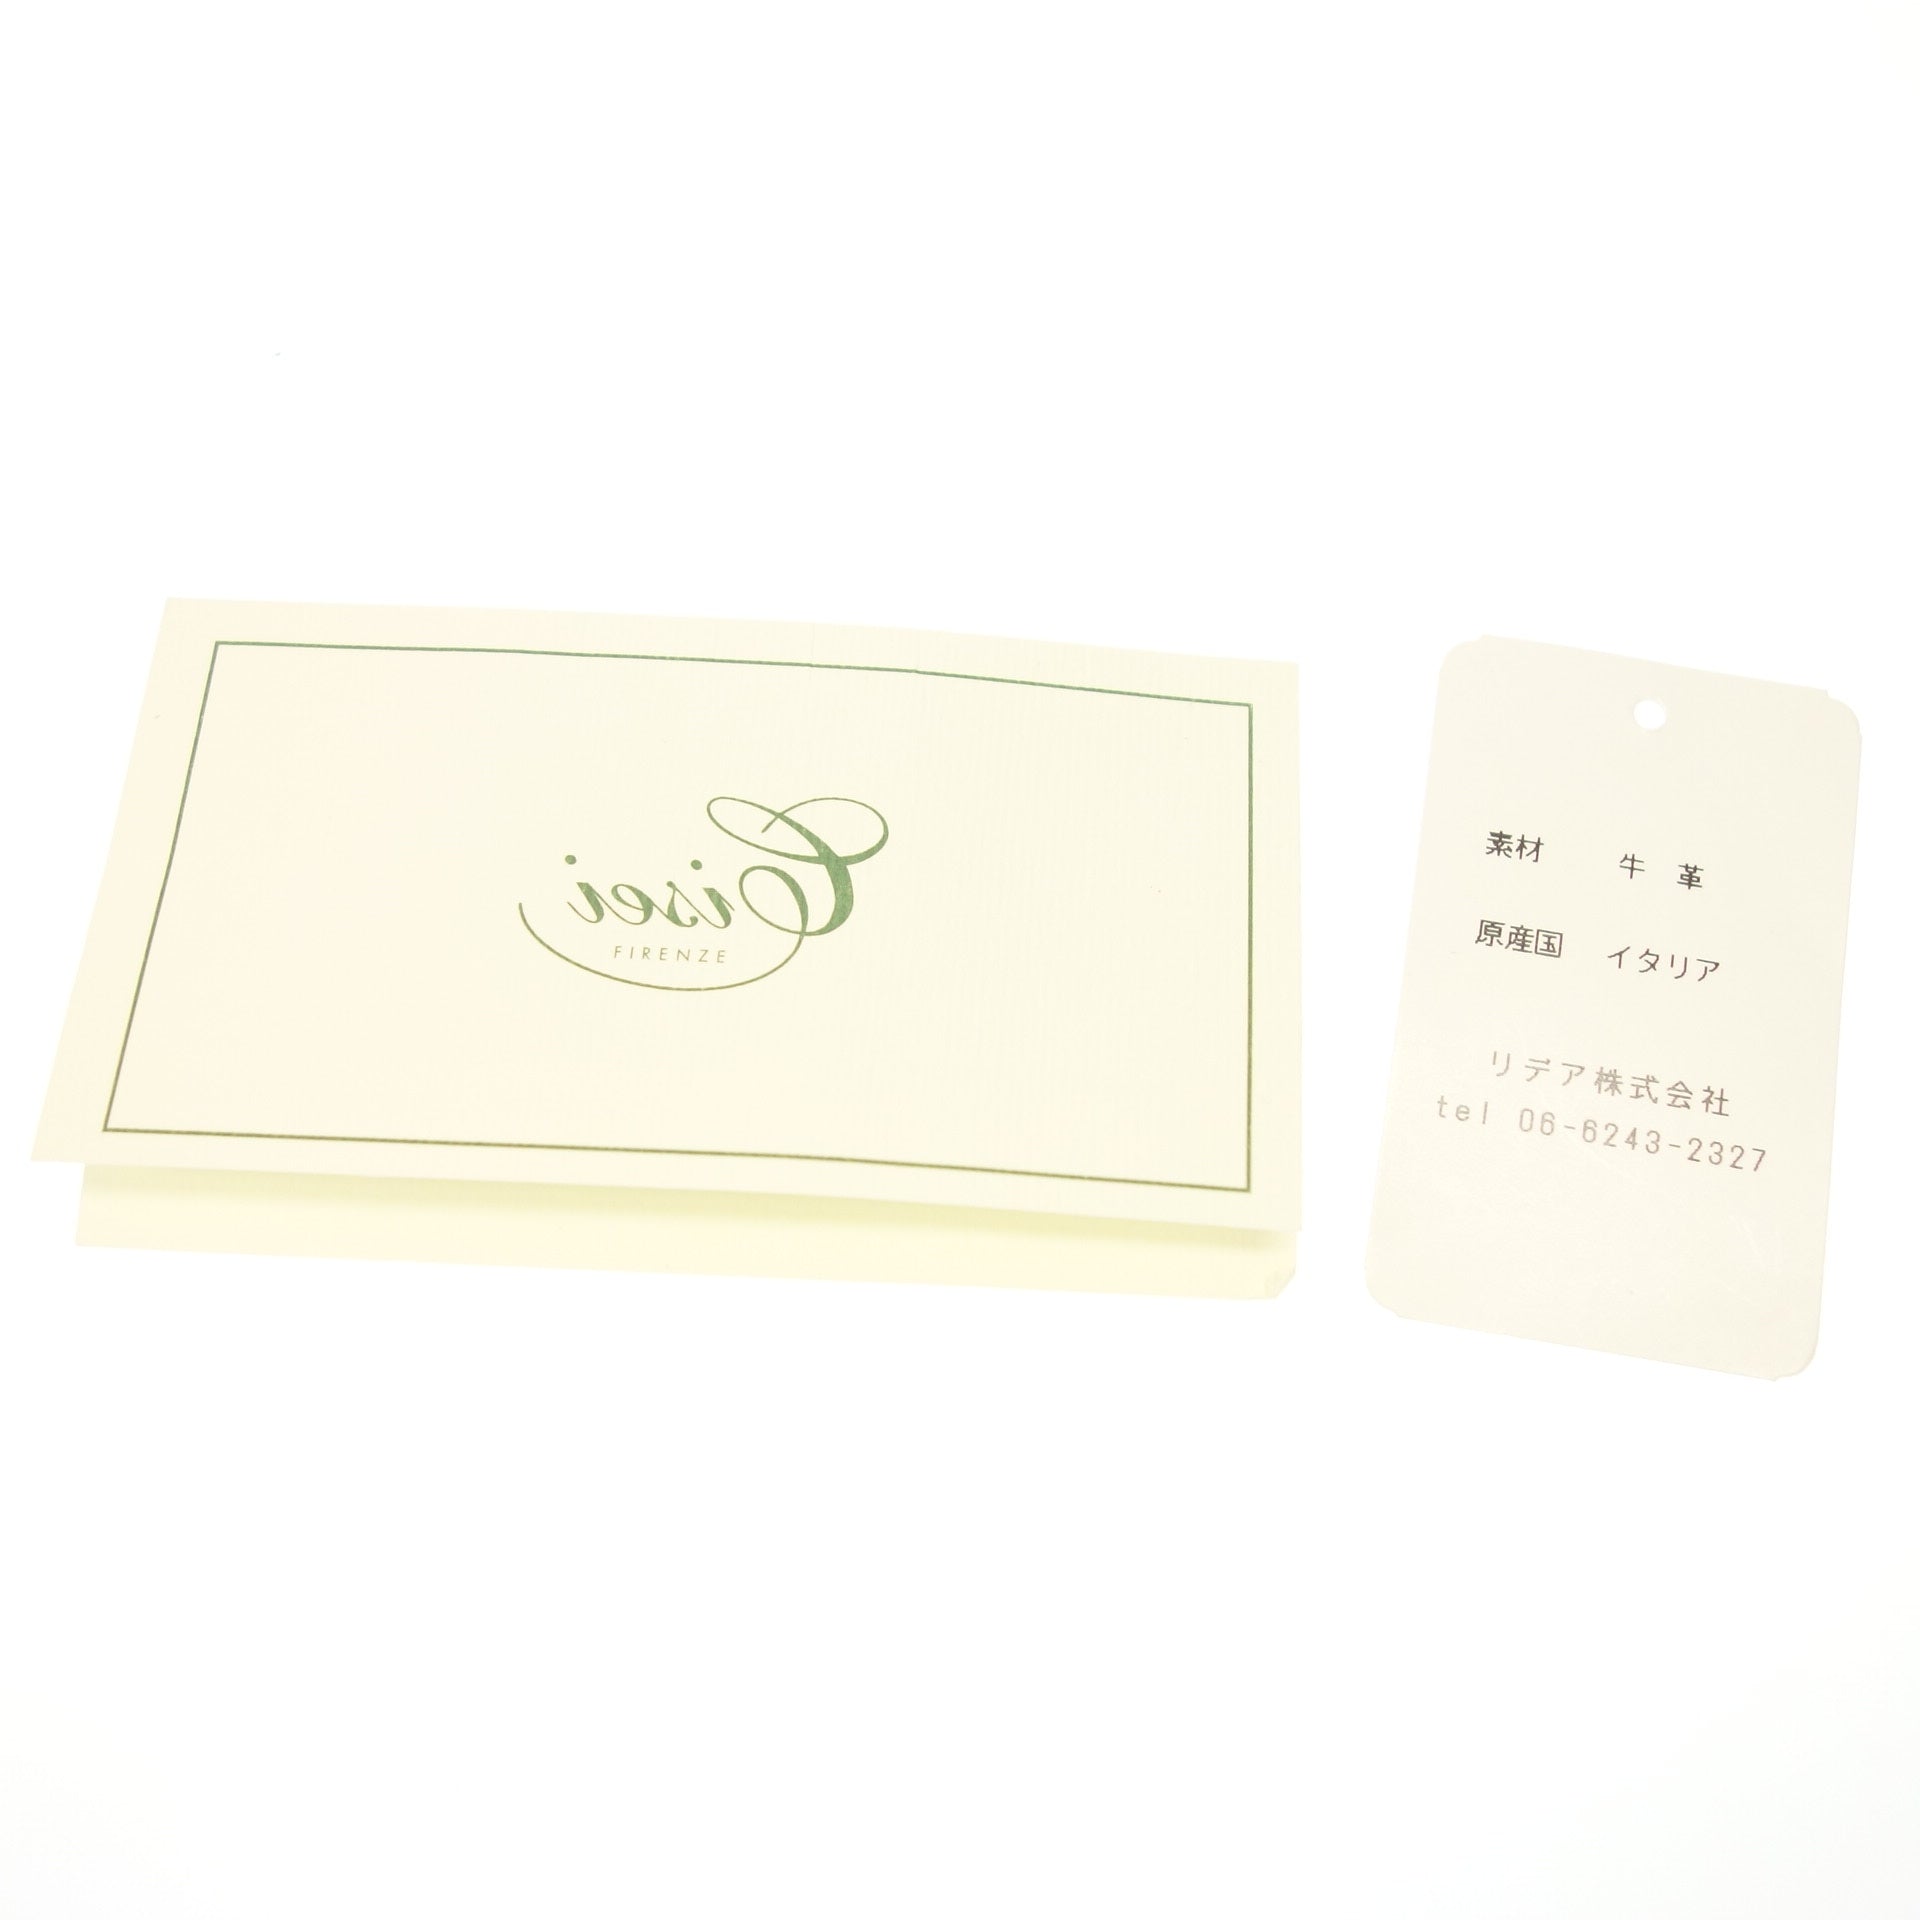 シセイ ショルダーバッグ レザー 2way 茶 CISEI【AFE12】【中古